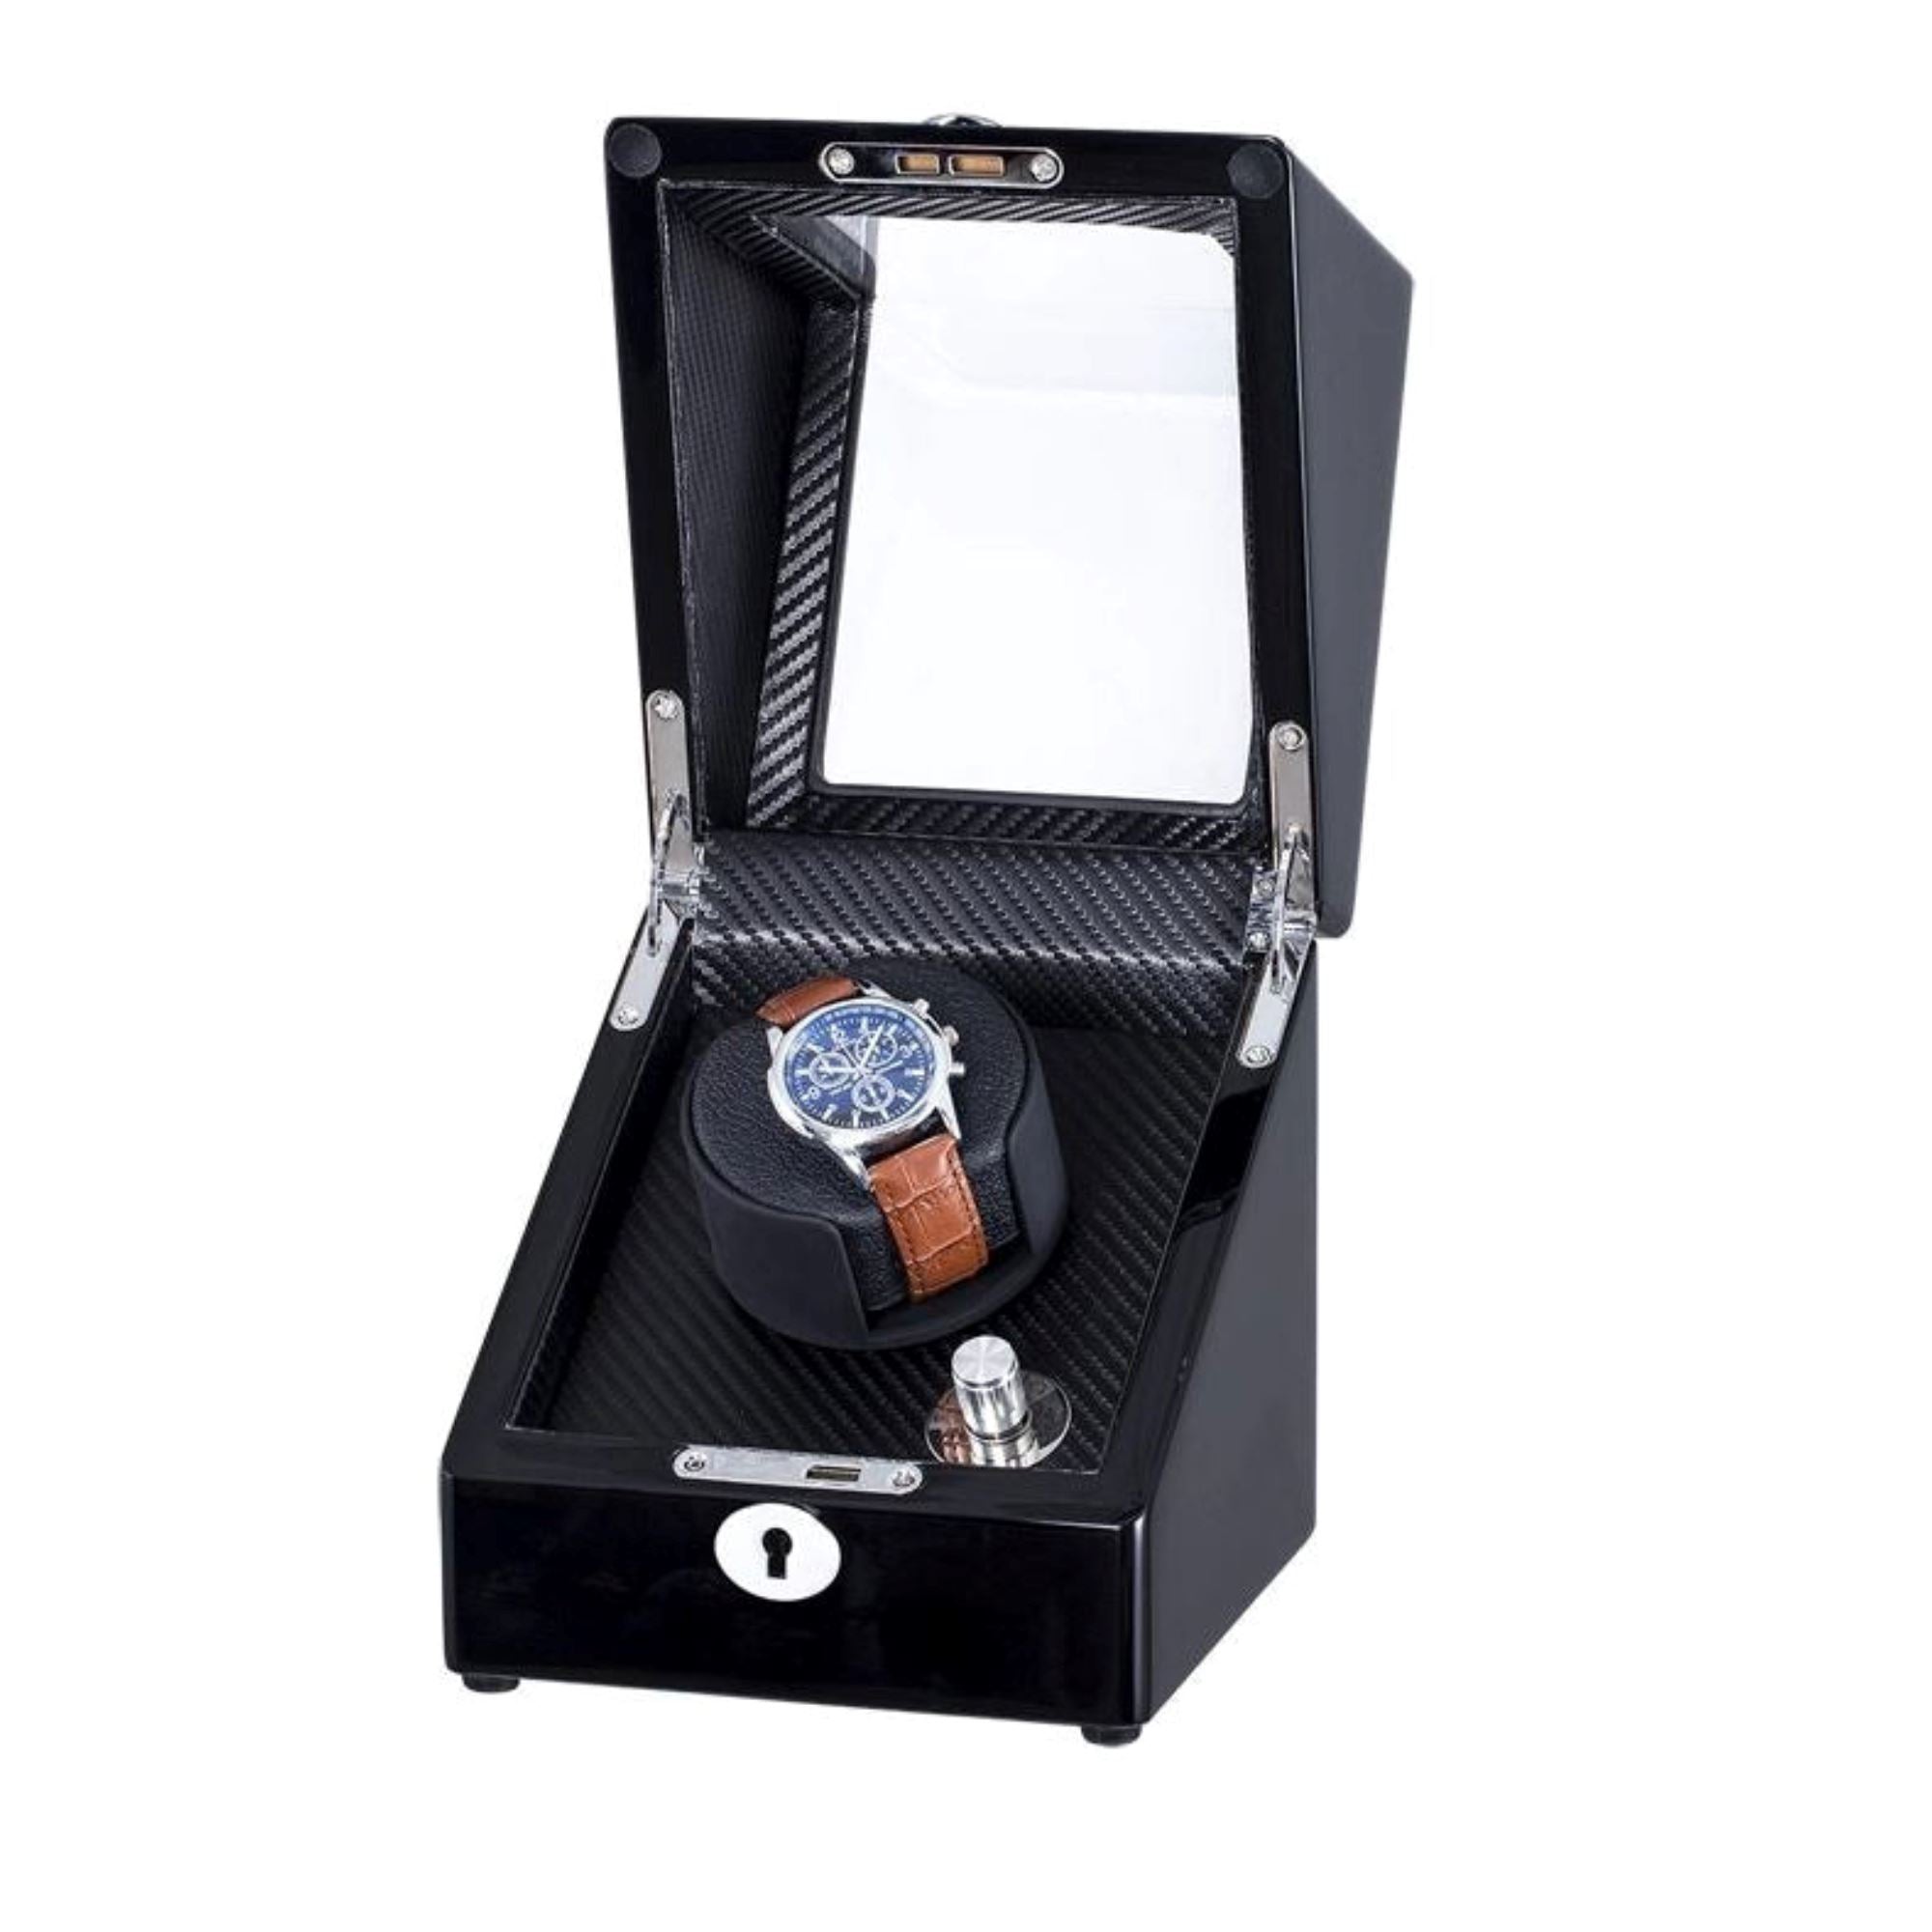 Waratah Watch Winder Box for 1 Watch in Black Watch Winder Boxes Clinks 